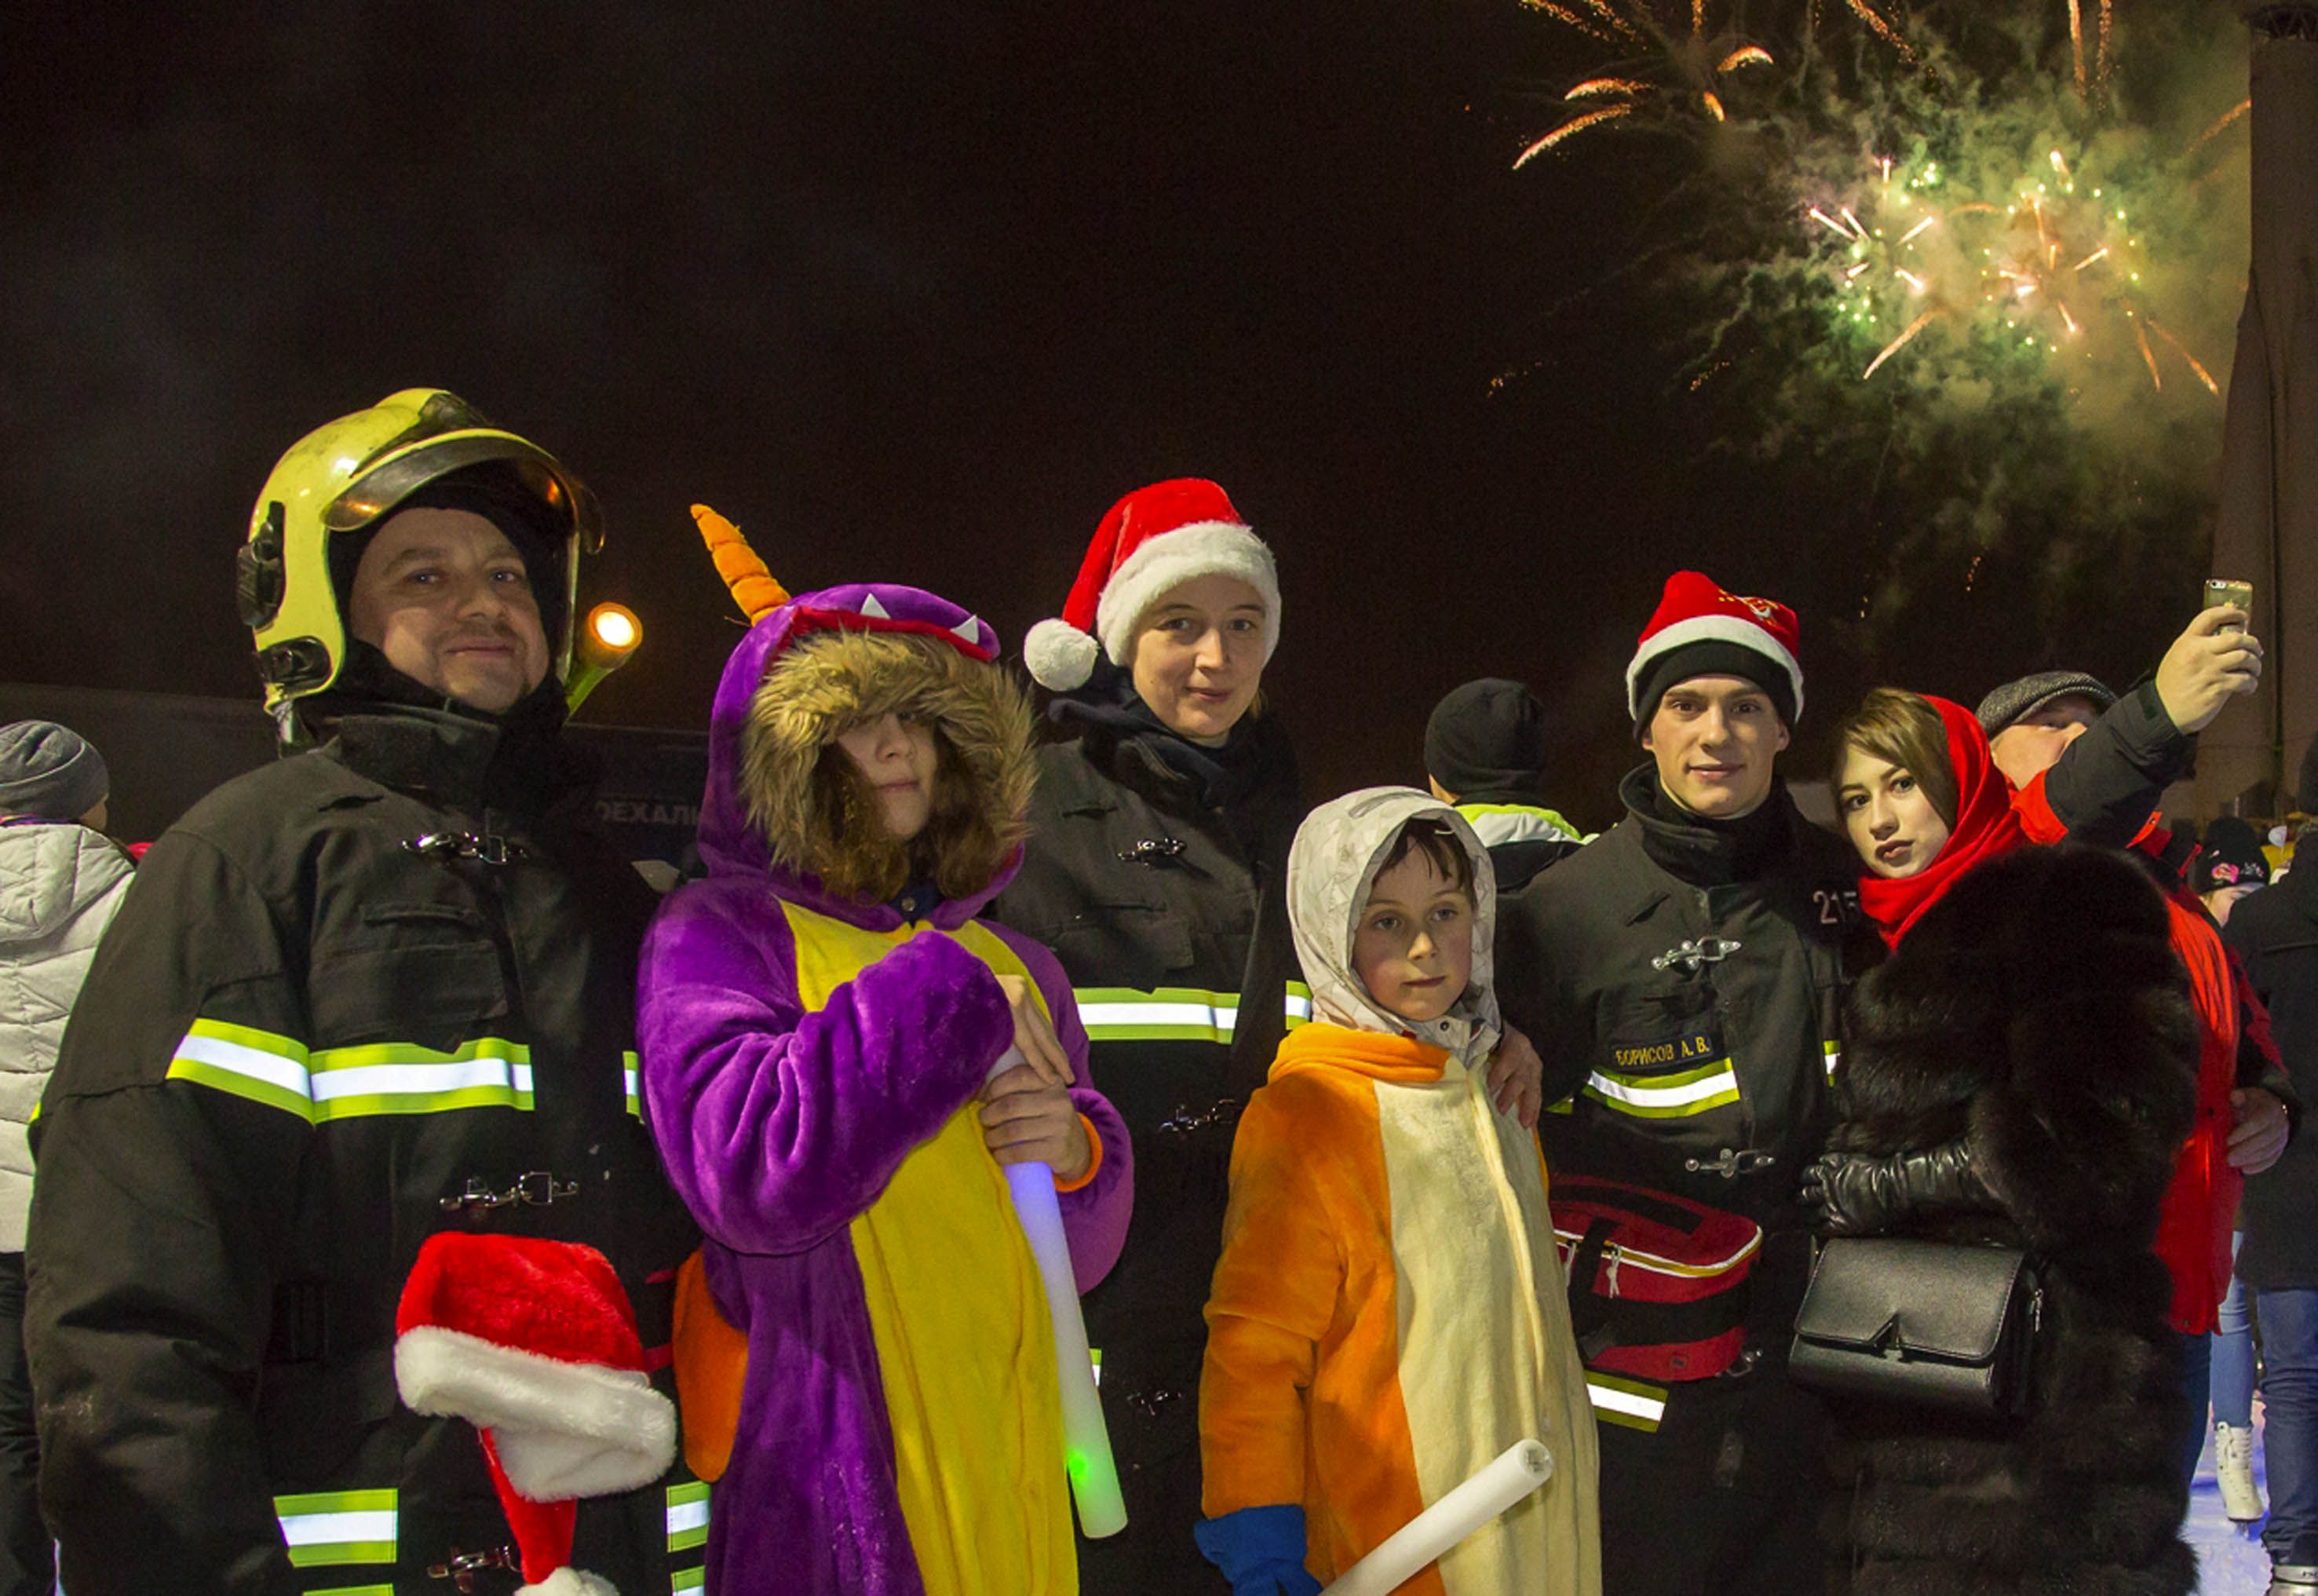 В новогодние праздники московские спасатели несут службу в усиленном режиме пожарной безопасности города Москвы